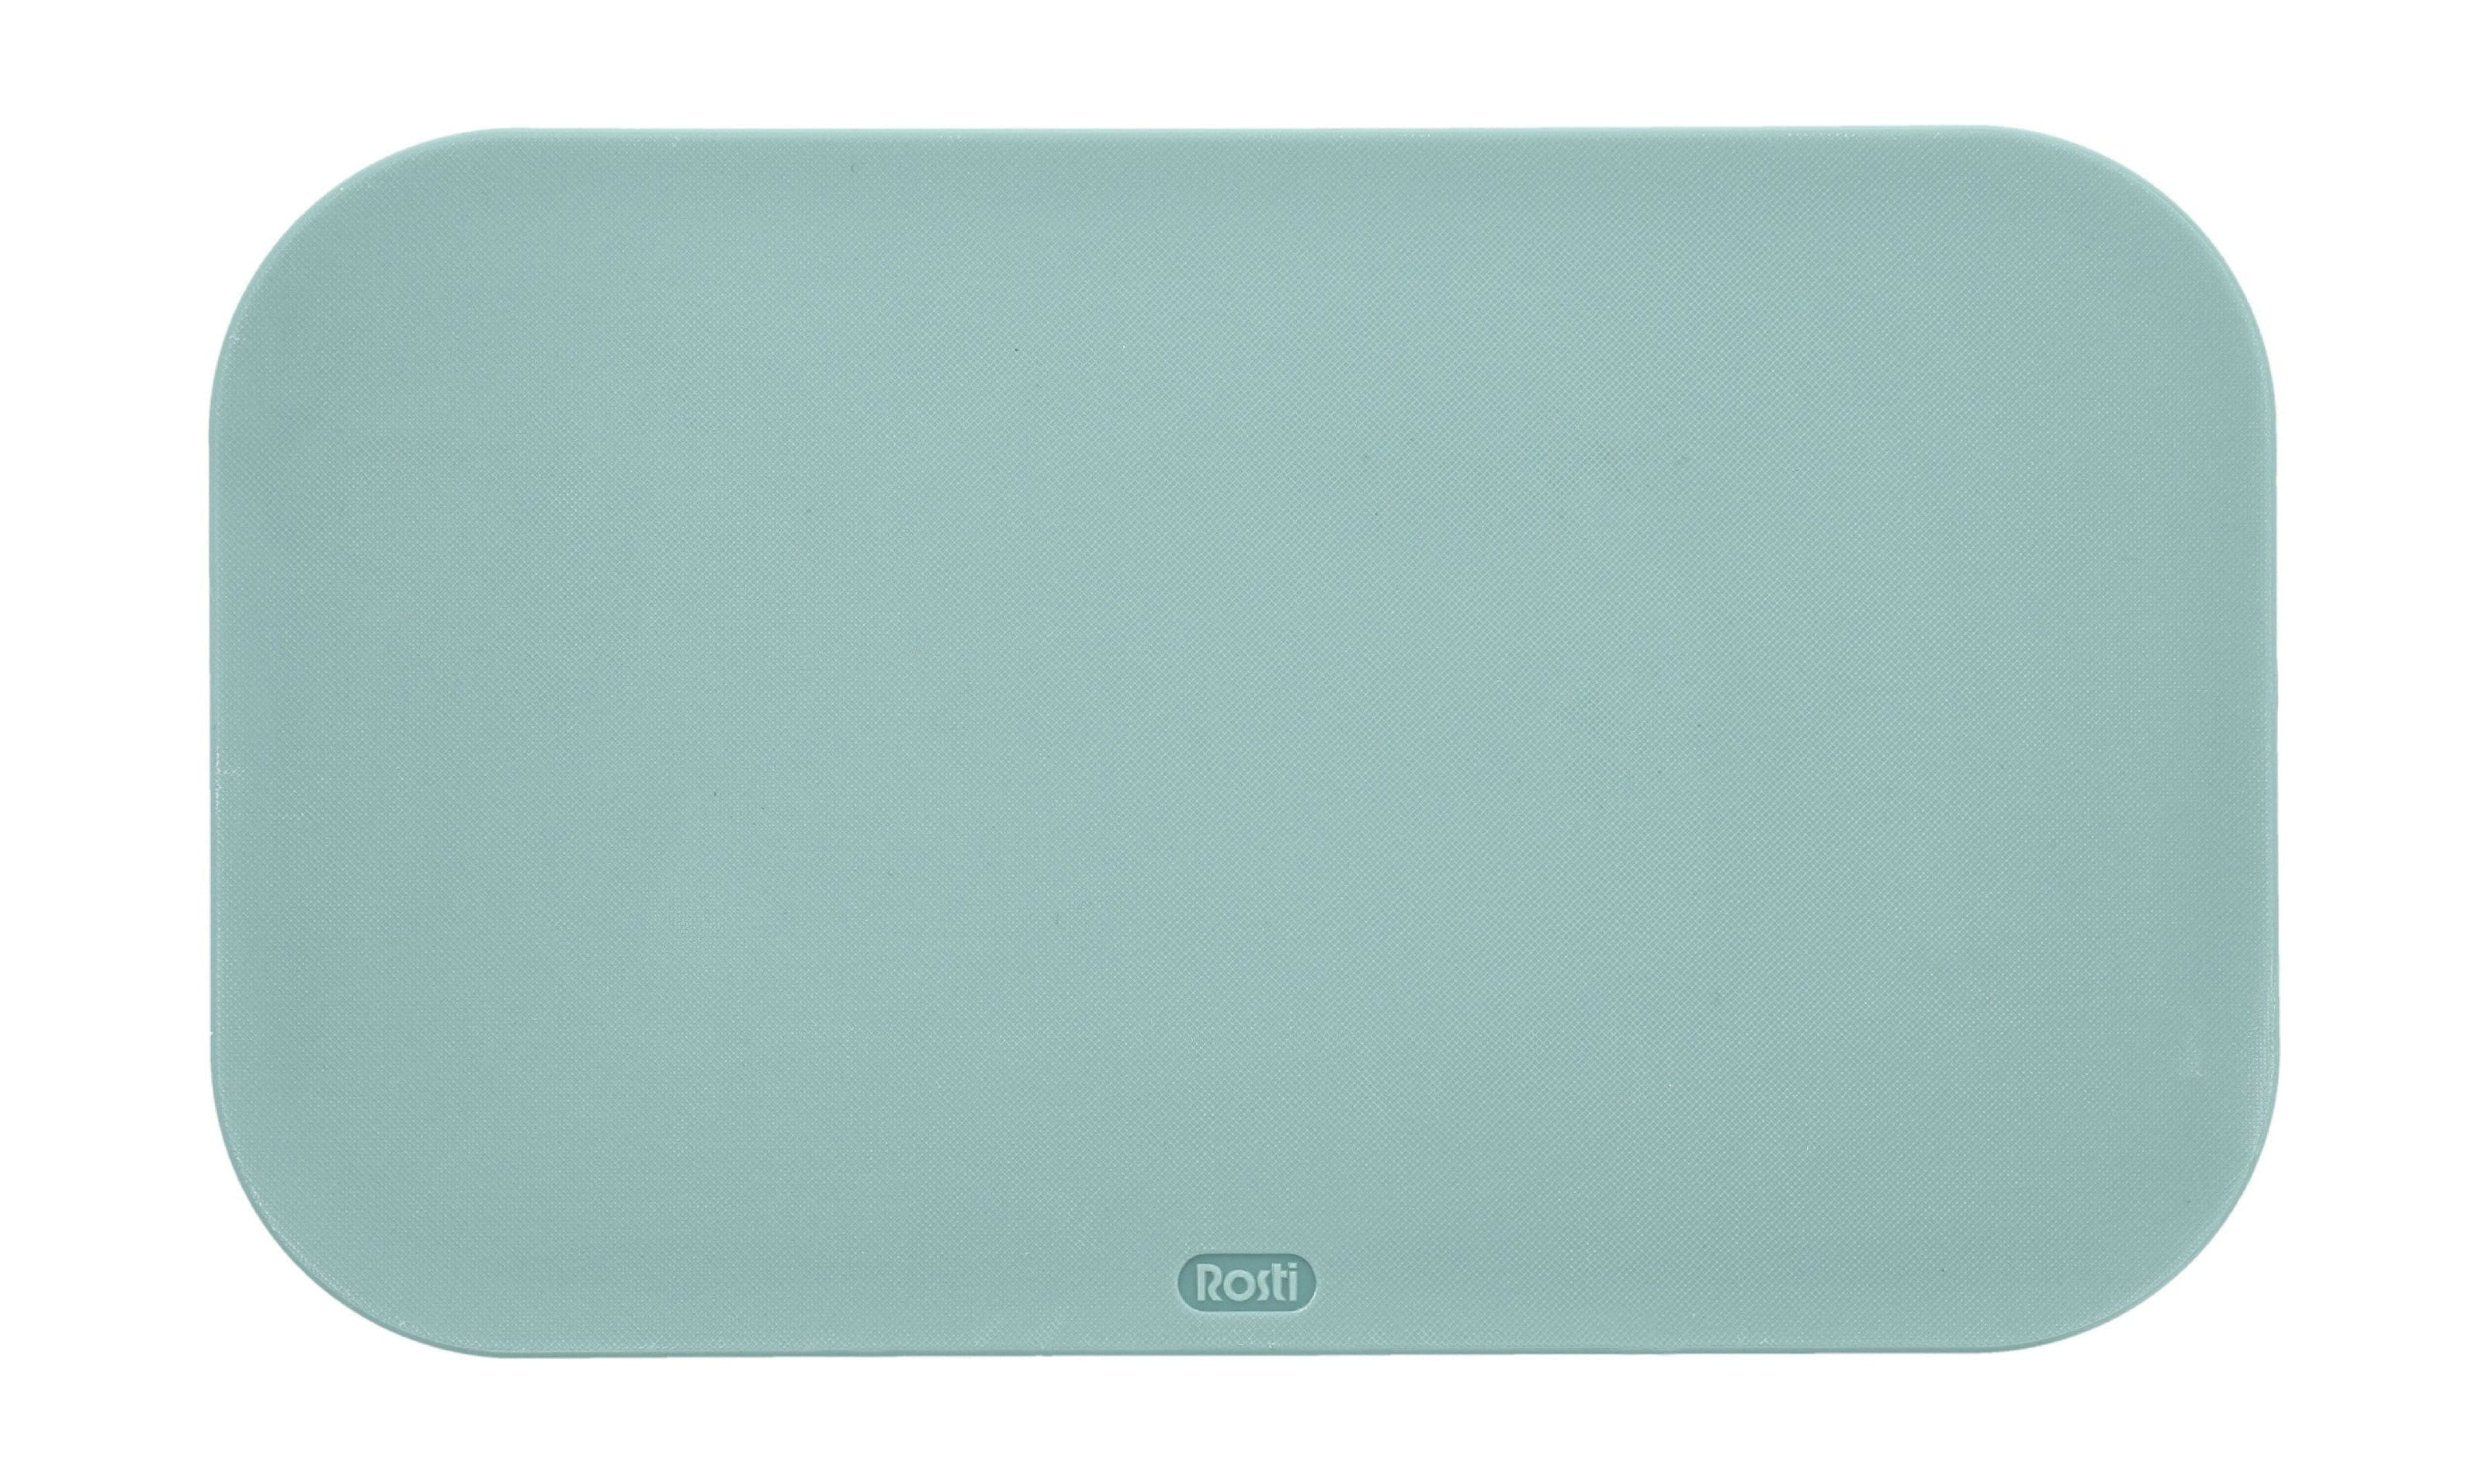 Rosti Choptima Board Board 26,5x16 cm, Green nordique